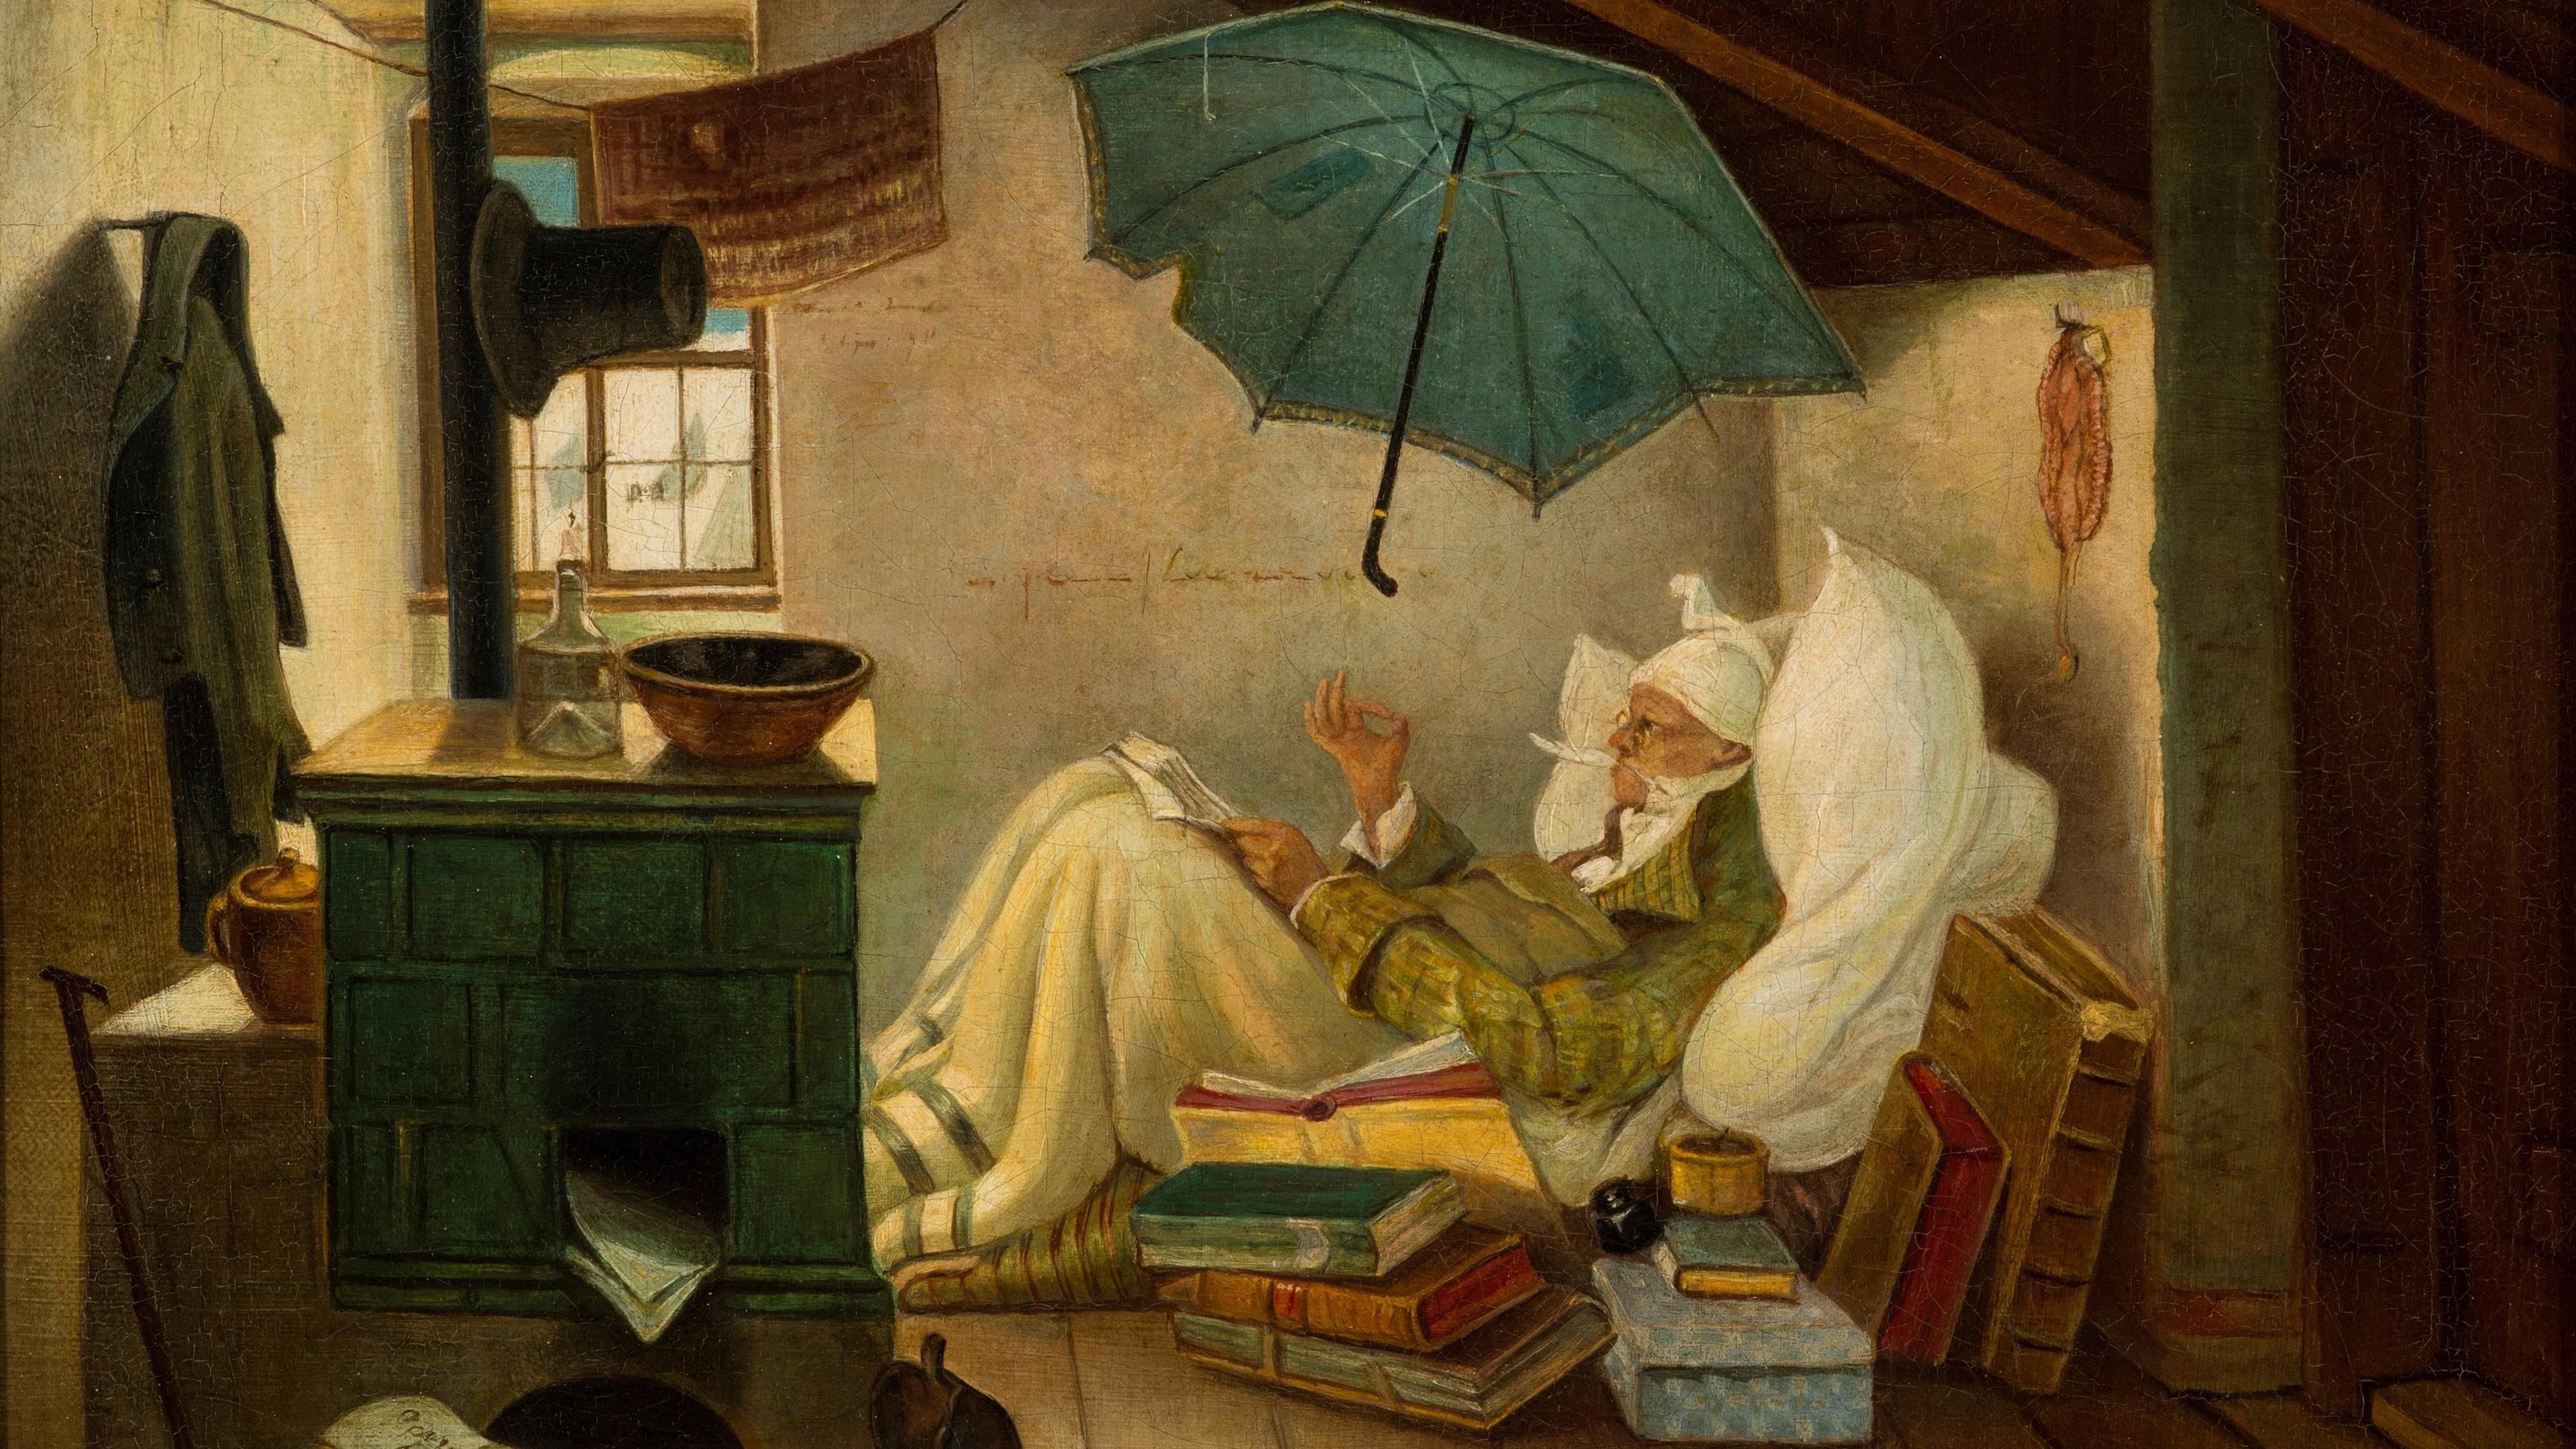 Den fattige poeten (1837). Spitzwegs stil kan kanske liknas vid en slags illustrerande realism, alternativt en realistisk fantasi. Foto: Public Domain